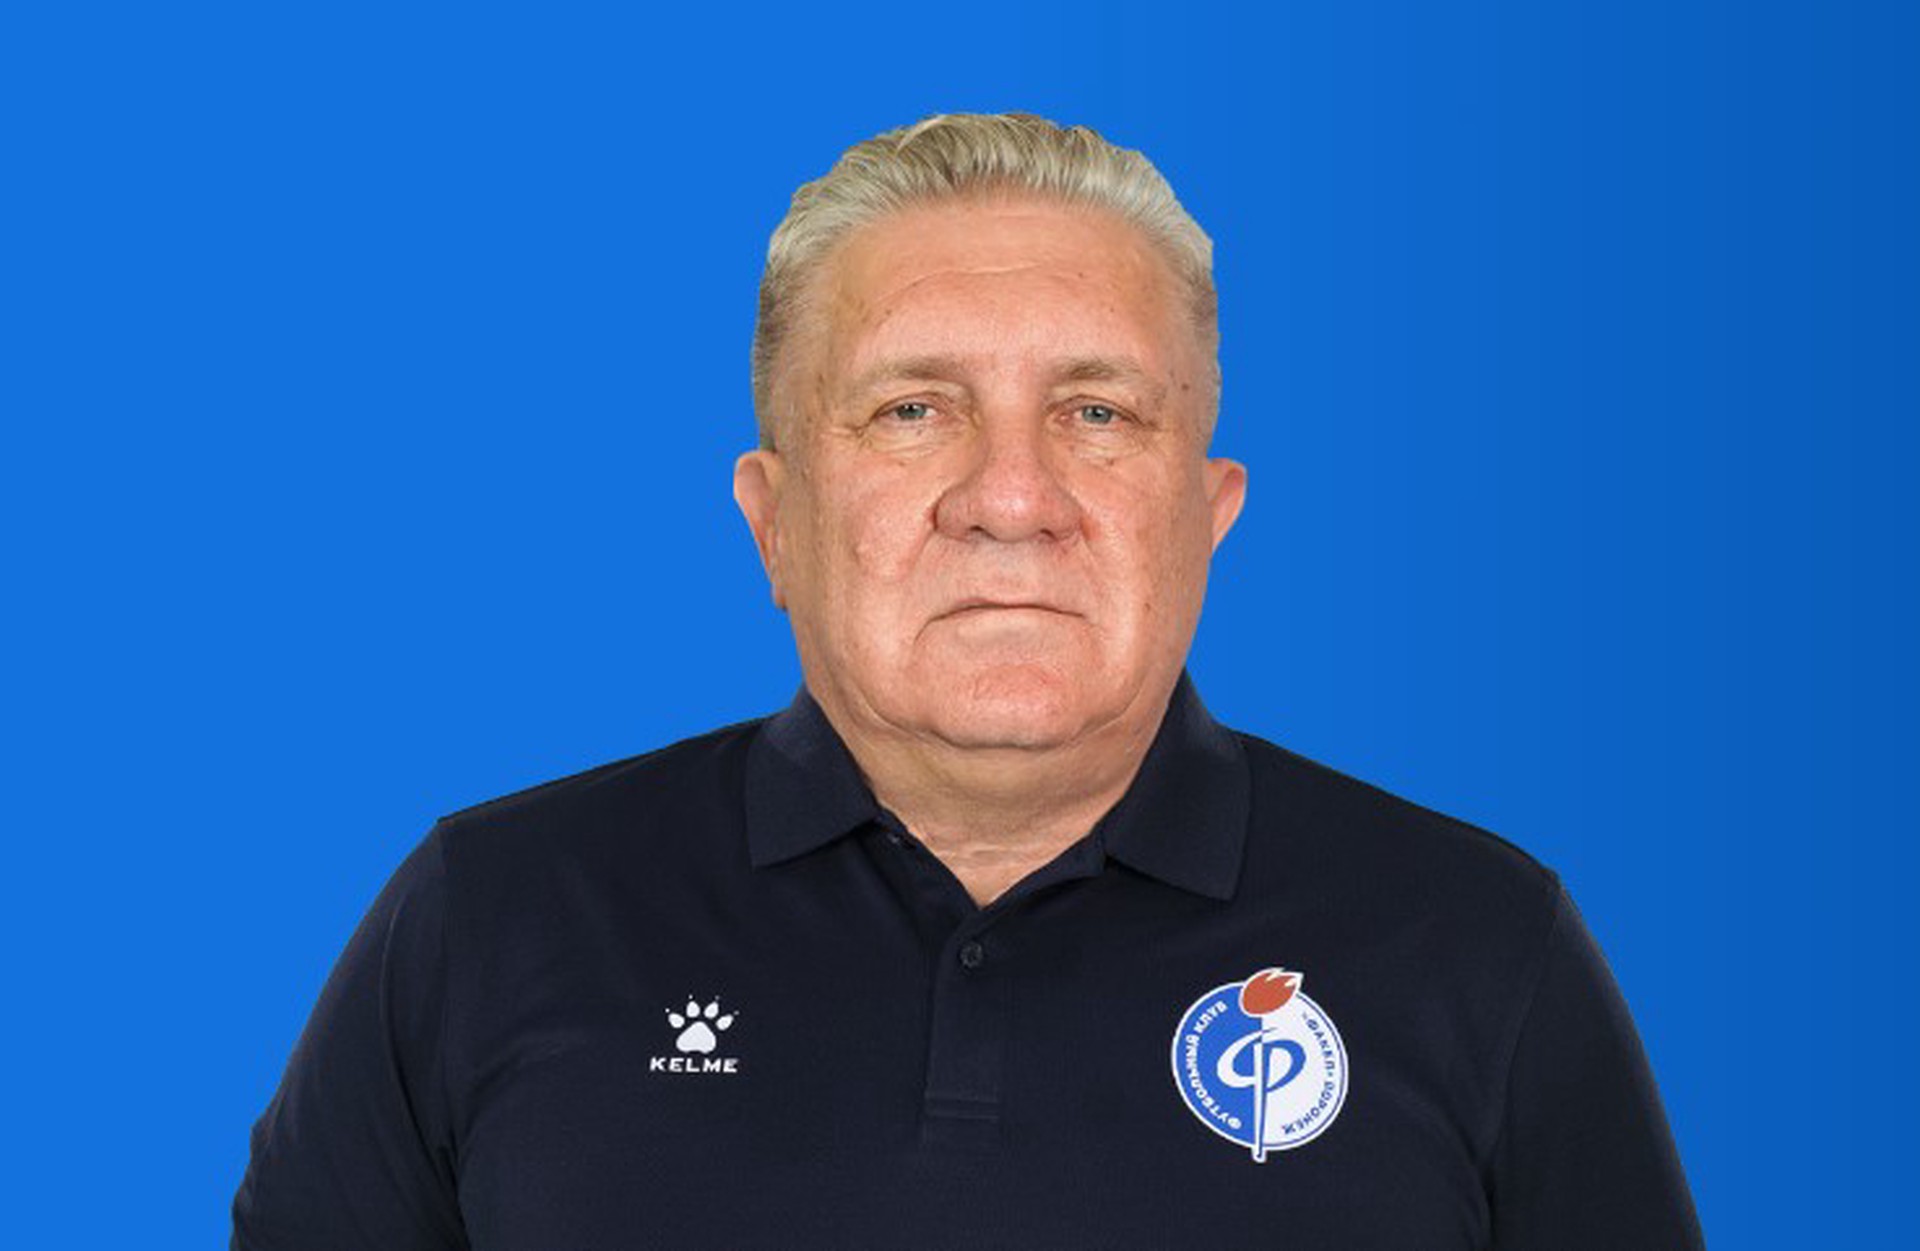 ФК «Факел» объявил об уходе главного тренера Ташуева спустя 20 дней после продления контракта